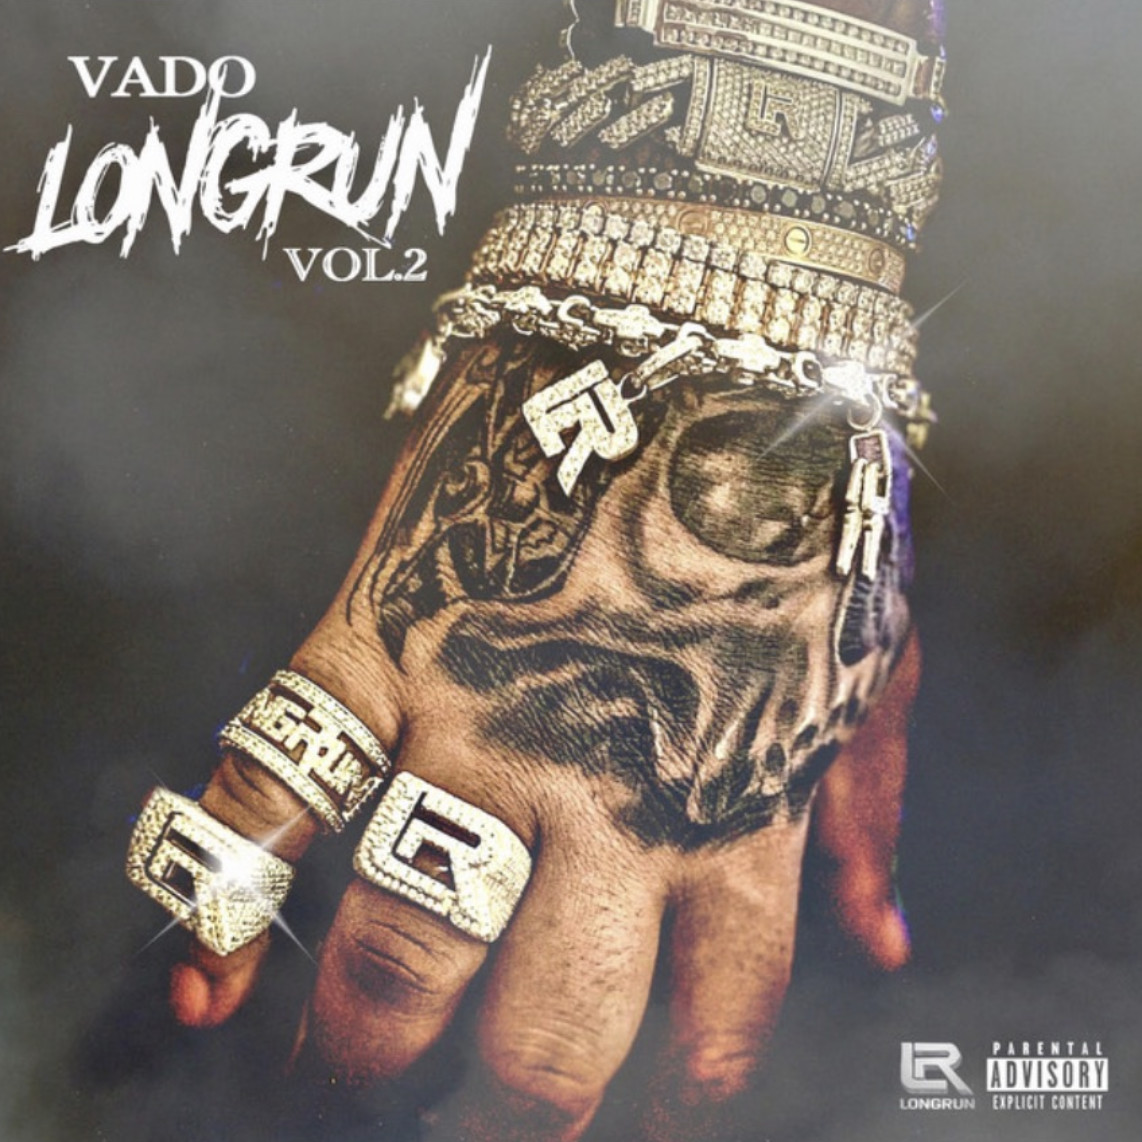 Vado Delivers Banger After Banger On “Long Run, Vol. 2”